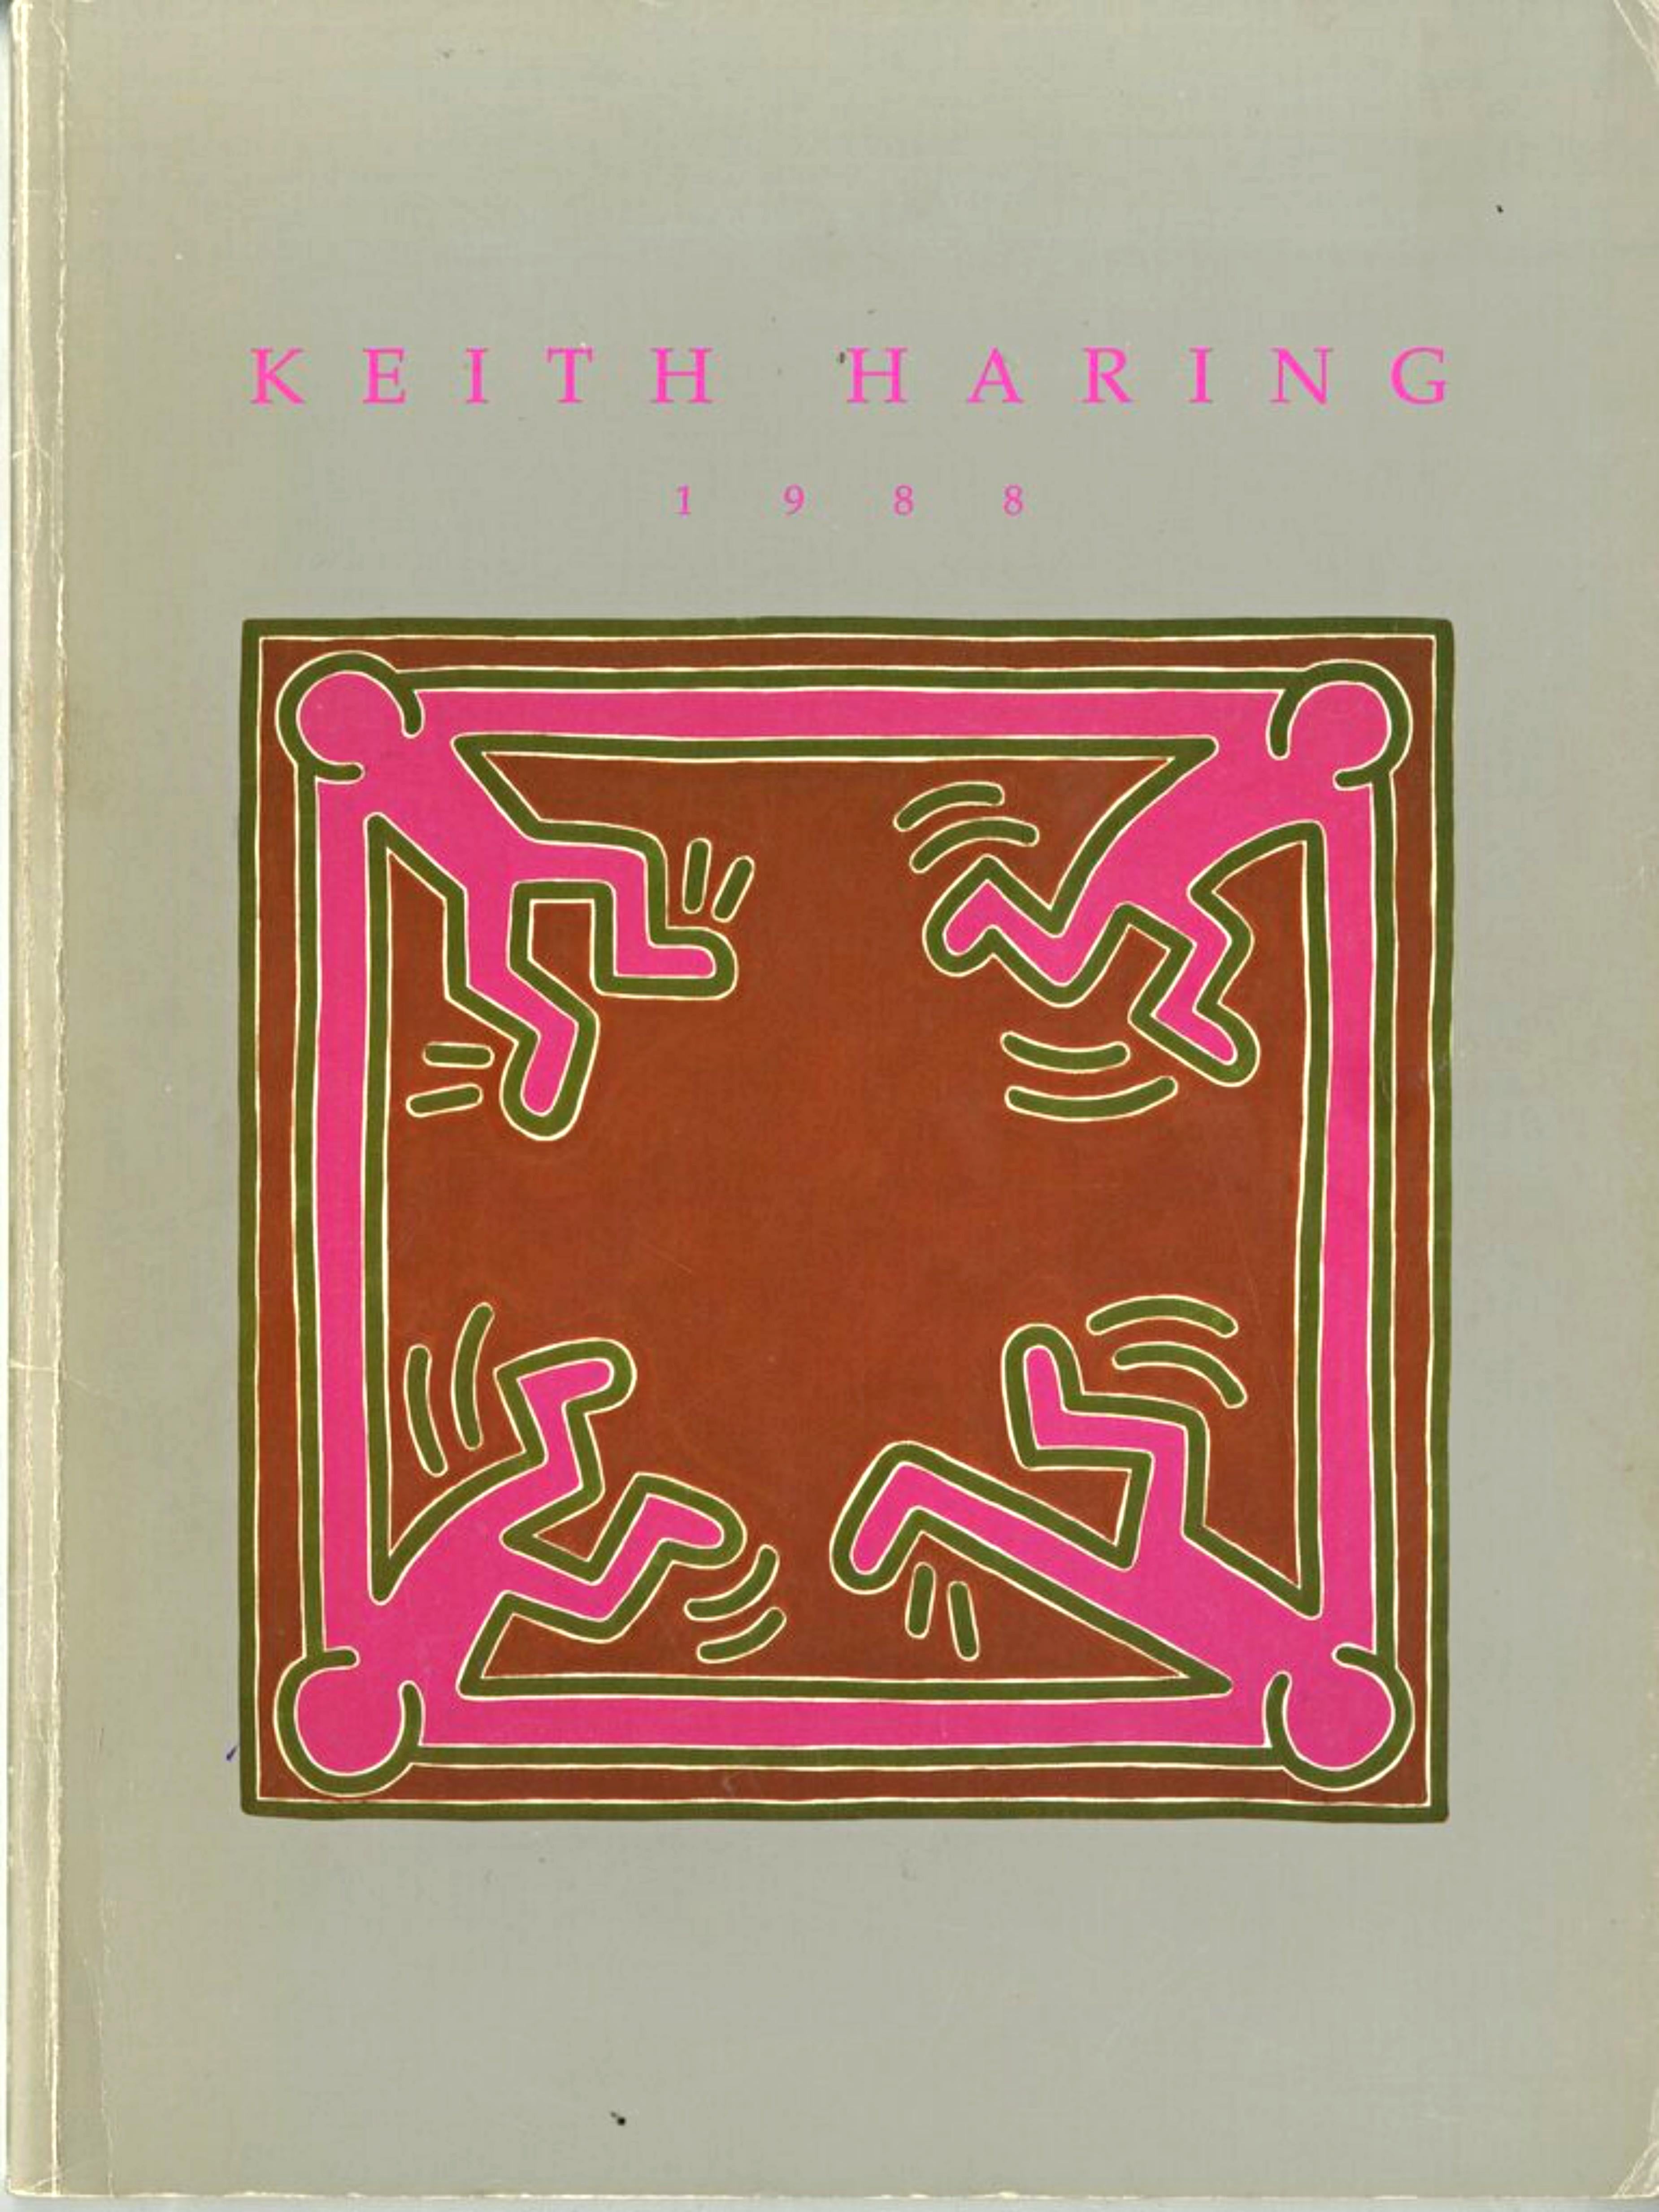 Keith Haring
Dessin sans titre dédicacé à David, 1988
Dessin original sur papier relié dans une monographie historique, avec une inscription à David Copley
Signé, inscrit et daté au marqueur noir au-dessus du dessin.
Il s'agit d'une œuvre